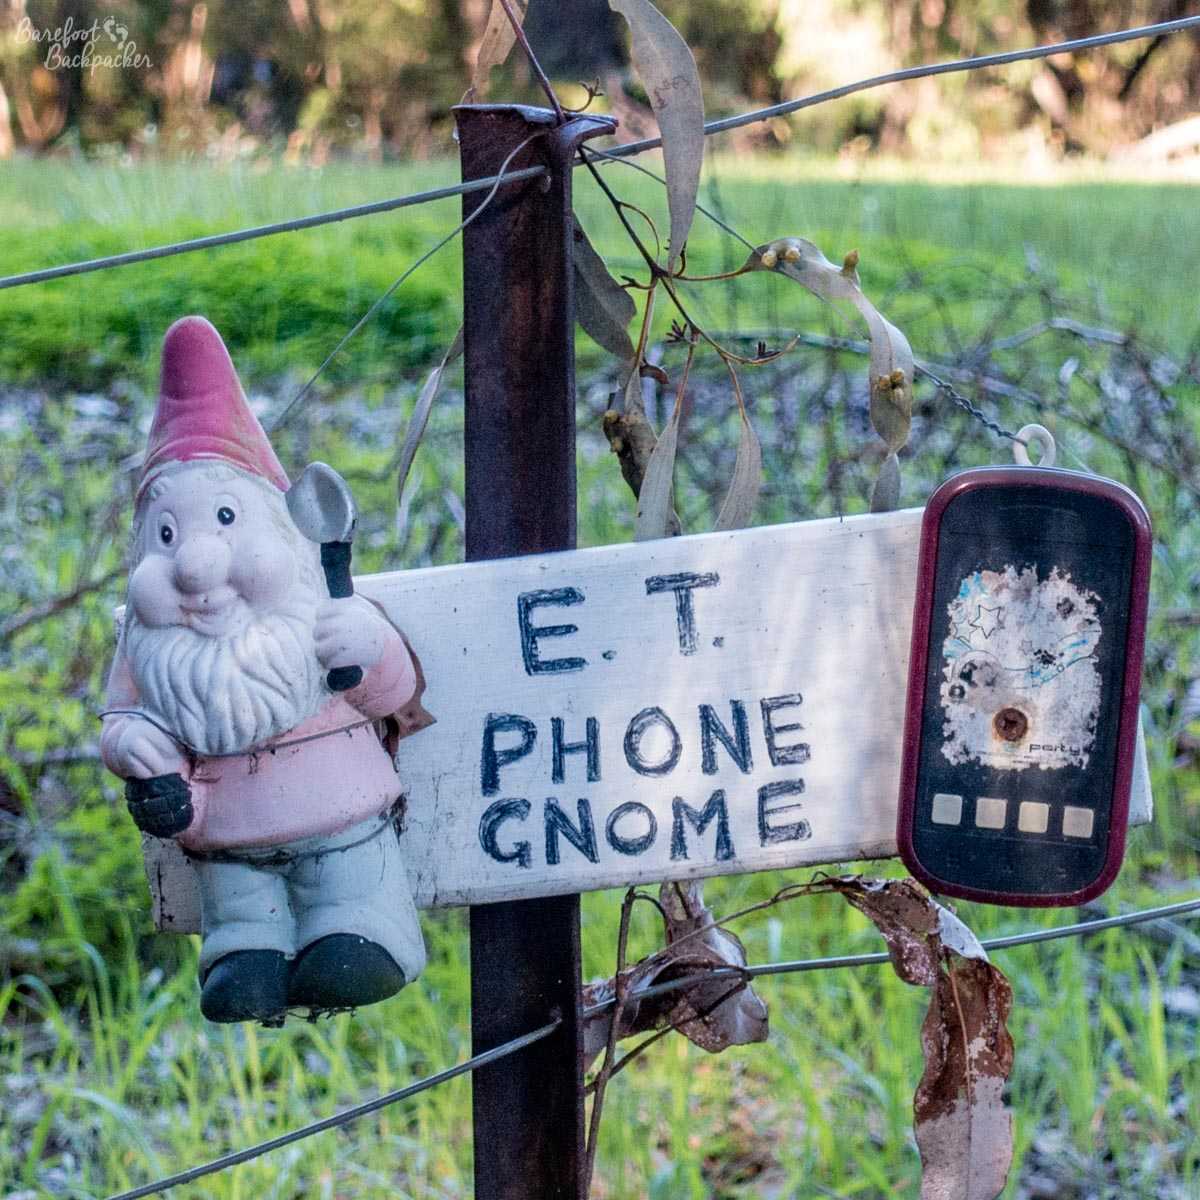 ET Phone Gnome, at Gnomesville